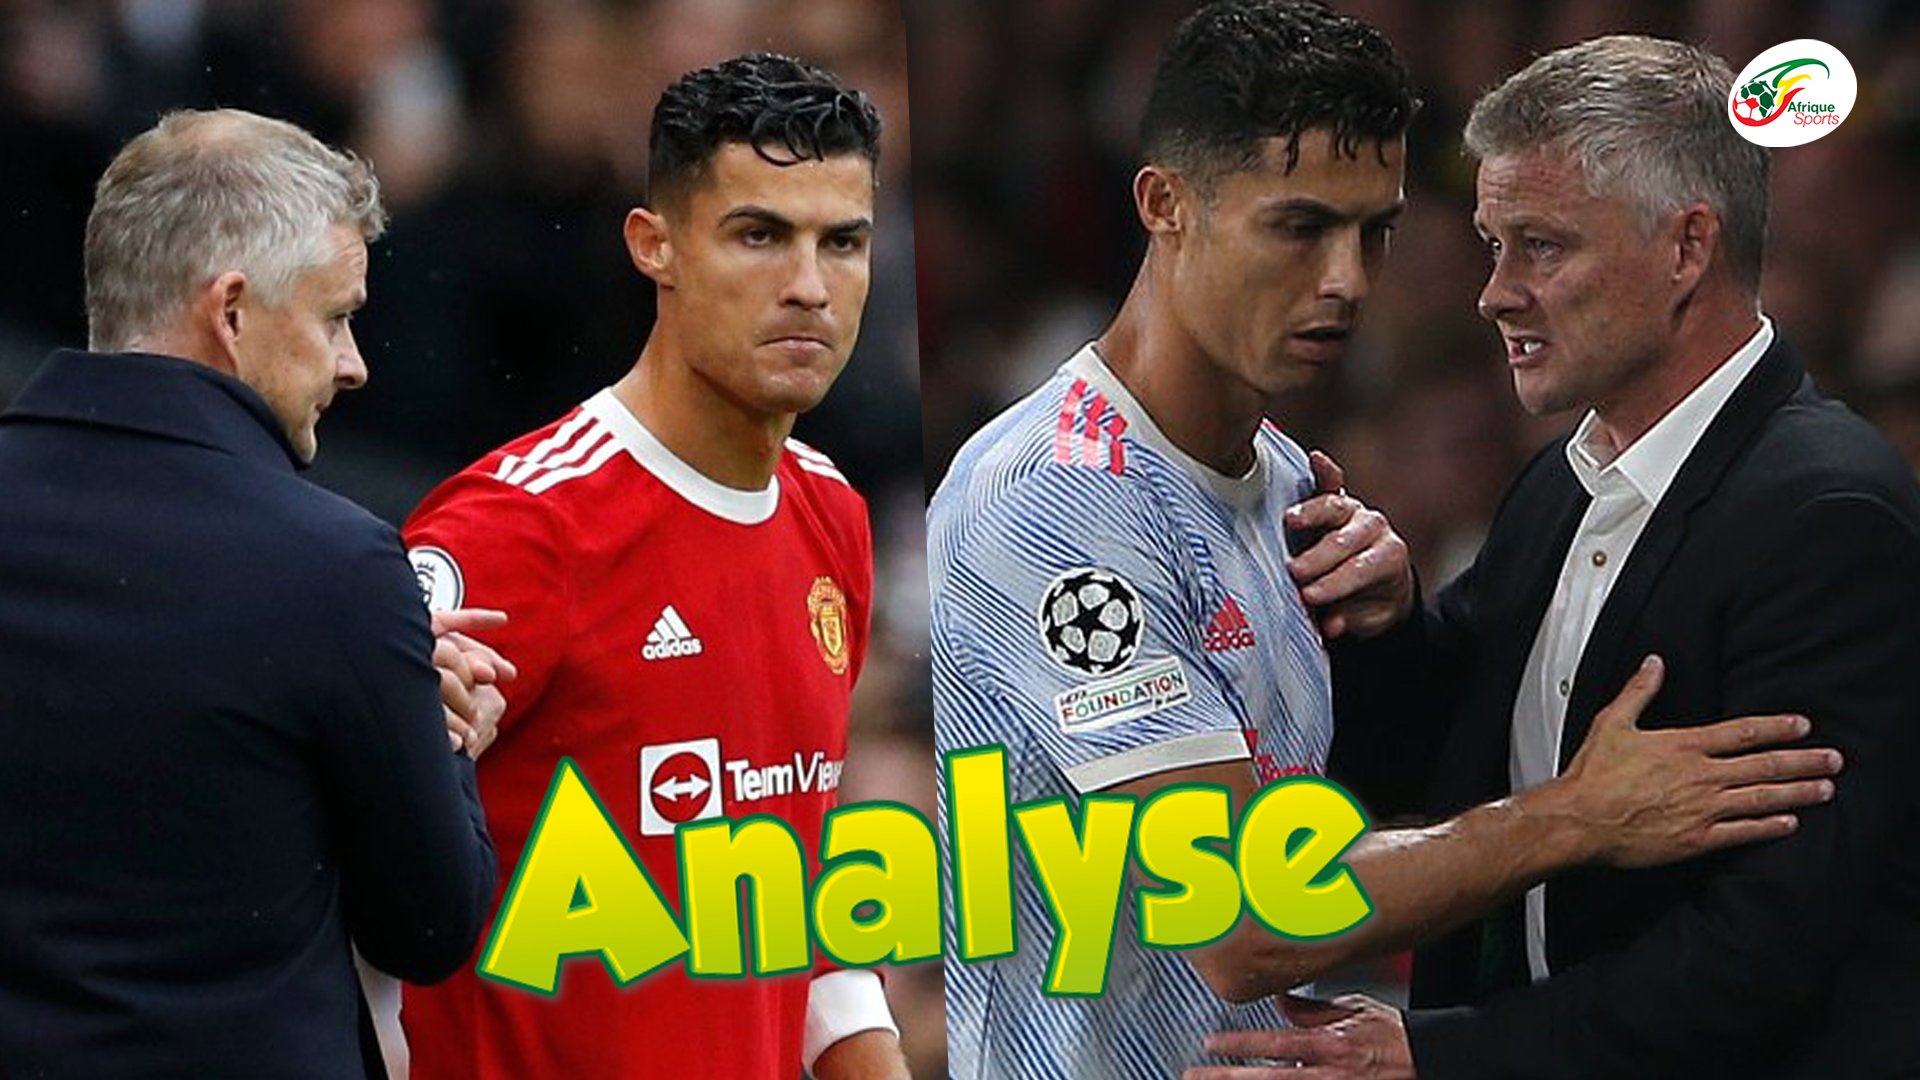 Les raisons de la colère de Cristiano Ronaldo envers Ole Gunnar Solksjaer | L’Analyse